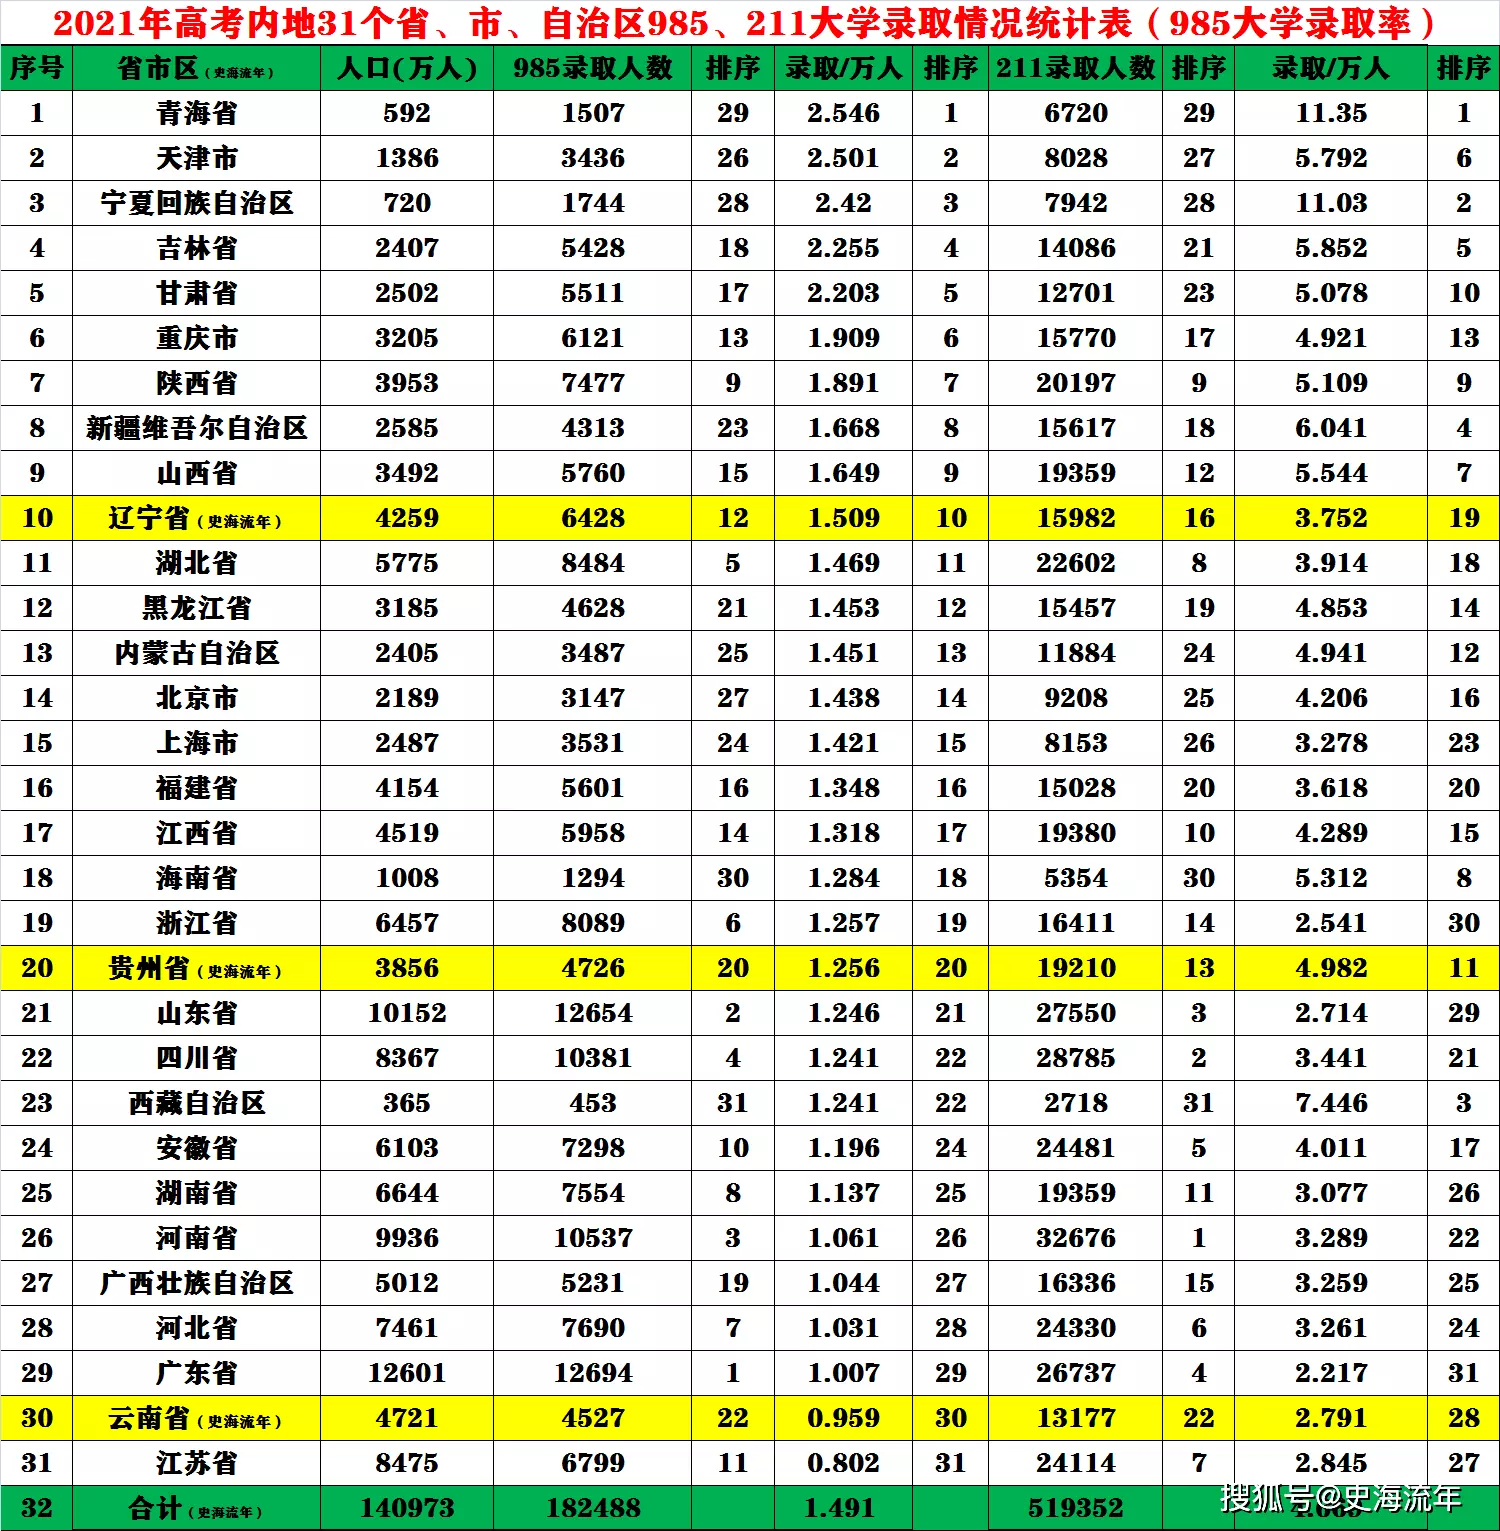 15、中国各省面积人口排名:中国各省市区占地面积和人口排列表（数字）